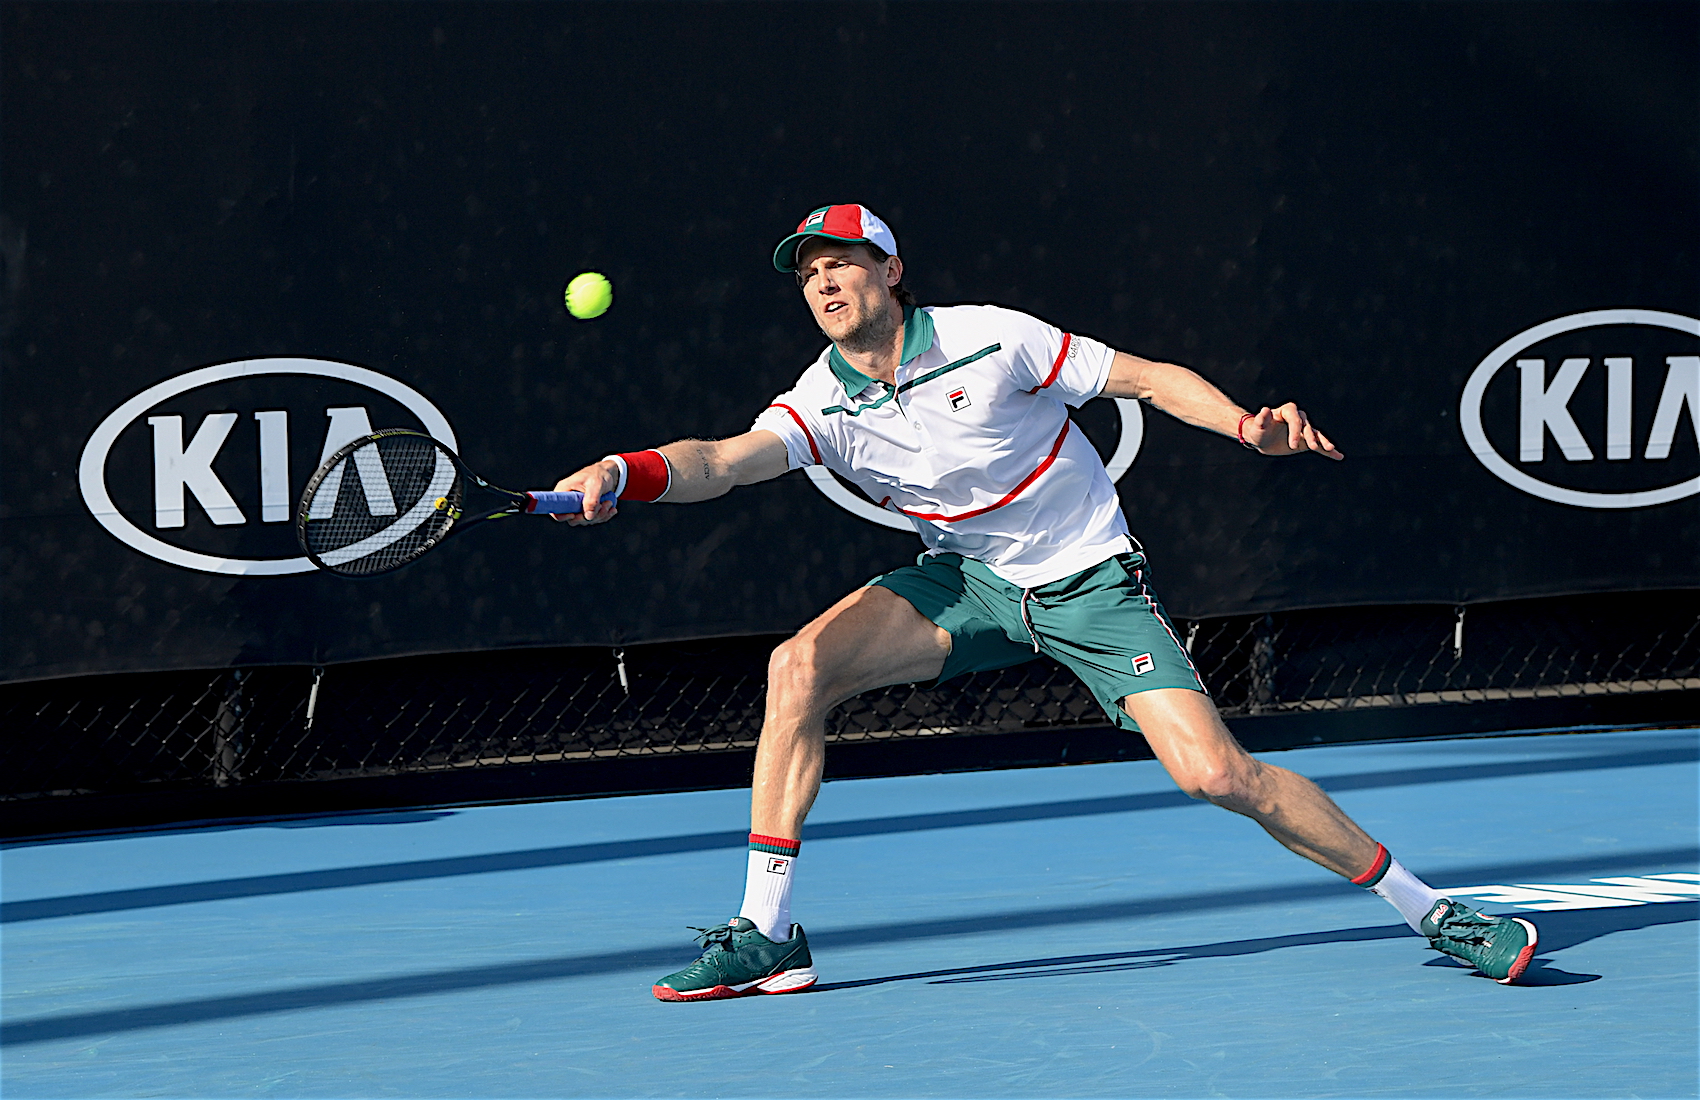 Australian Open 2020: Andreas Seppi